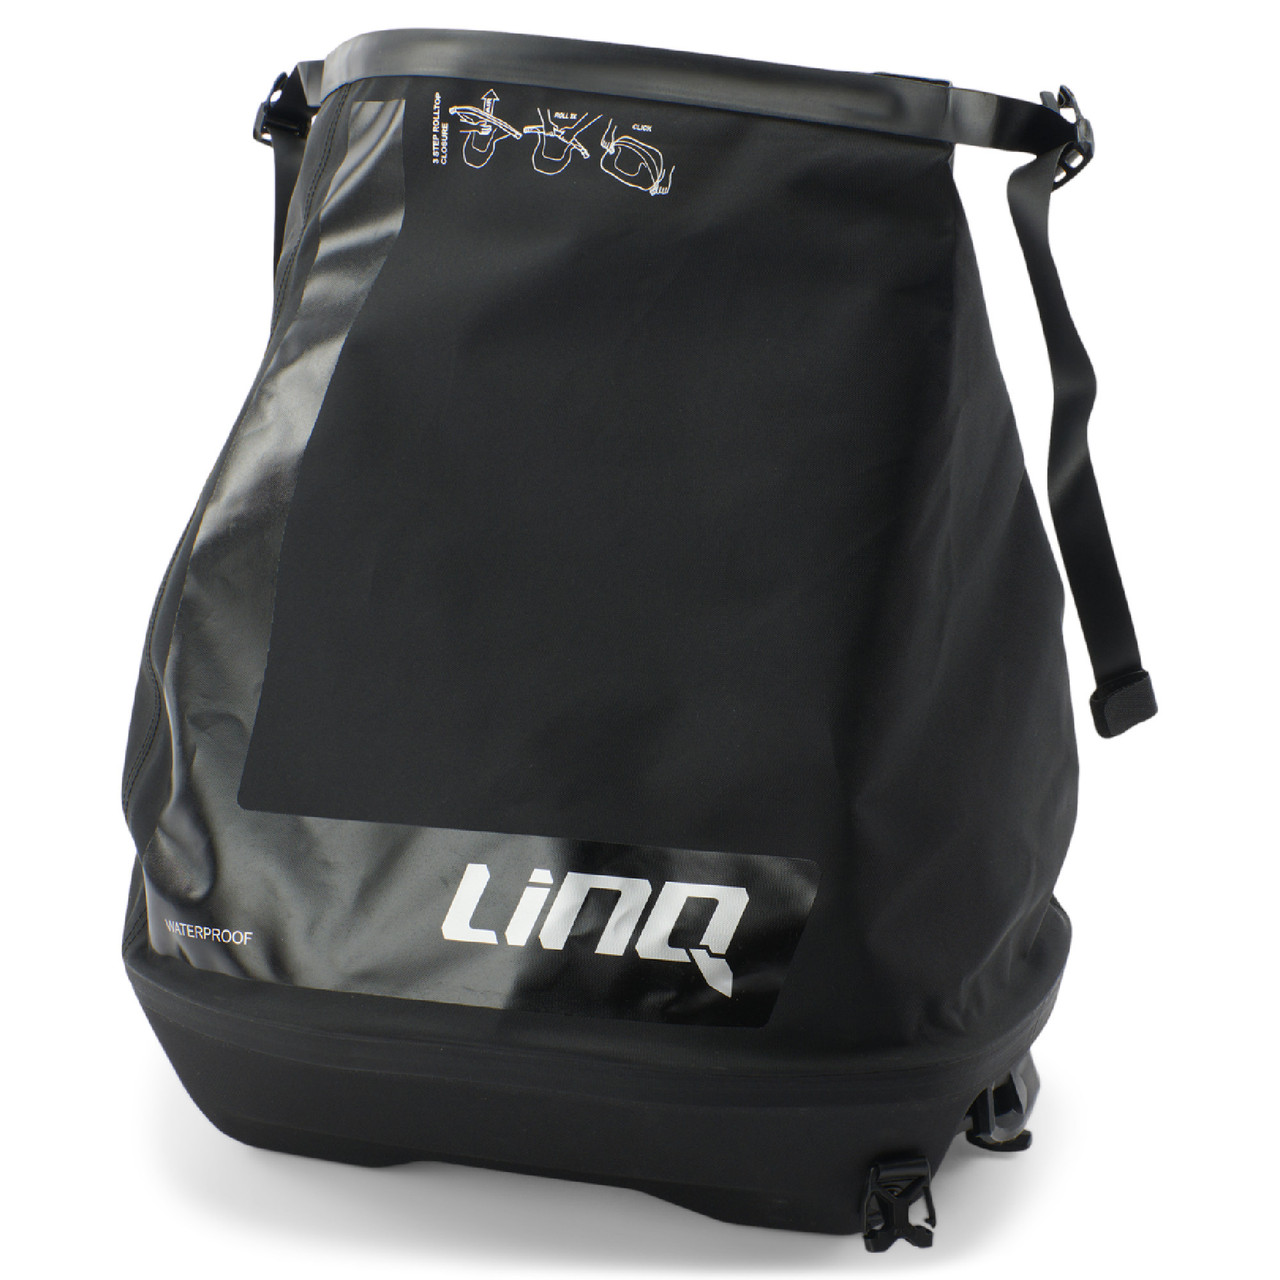 Sea-Doo New OEM LinQ Roll-Top Bag, 715008110